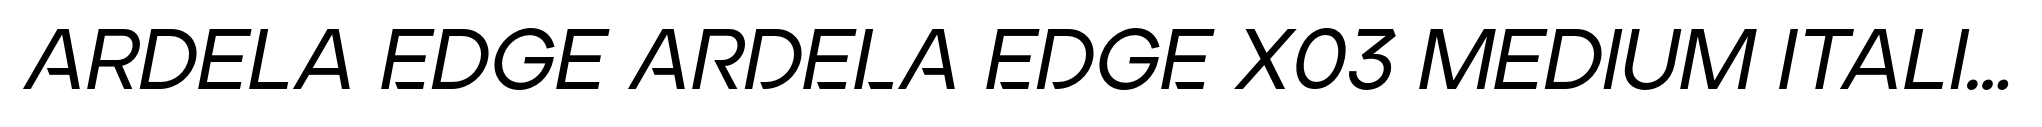 Ardela Edge ARDELA EDGE X03 Medium Italic image